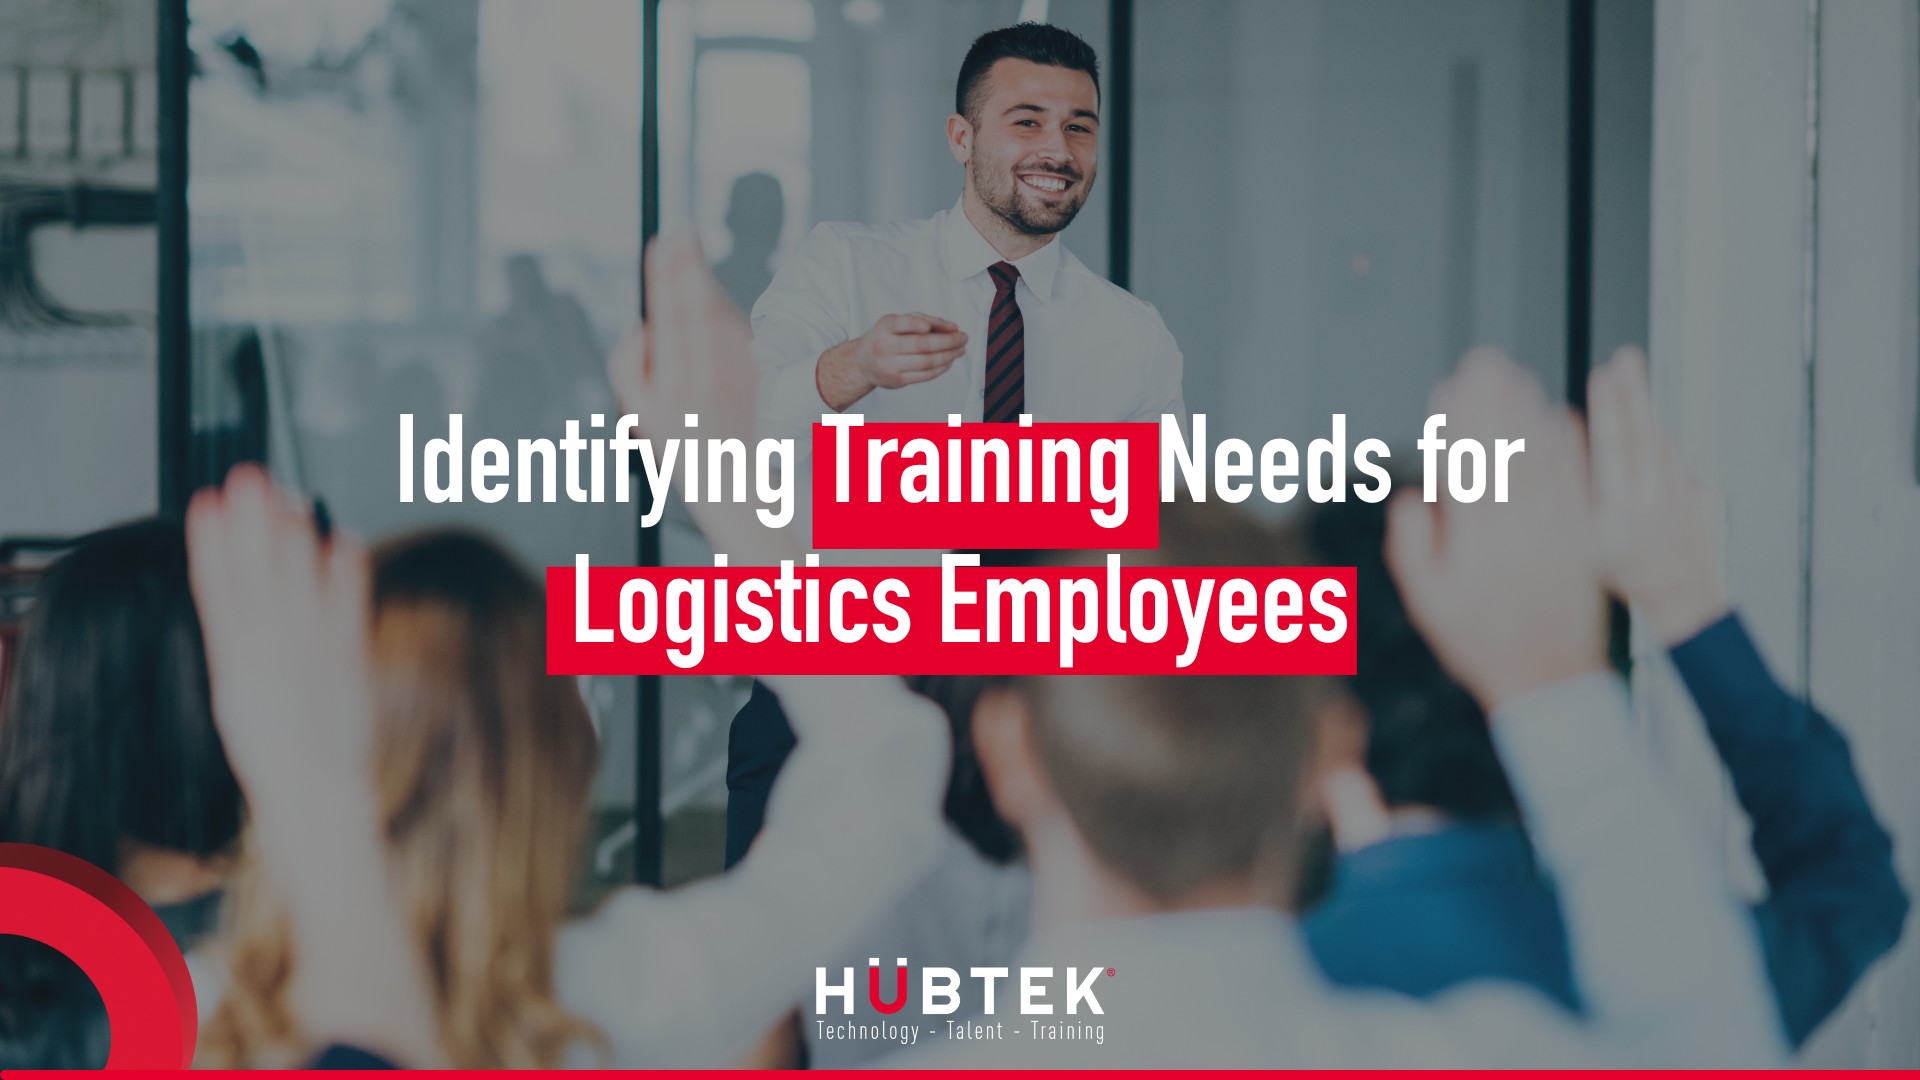 Identifying training needs for logistics employees